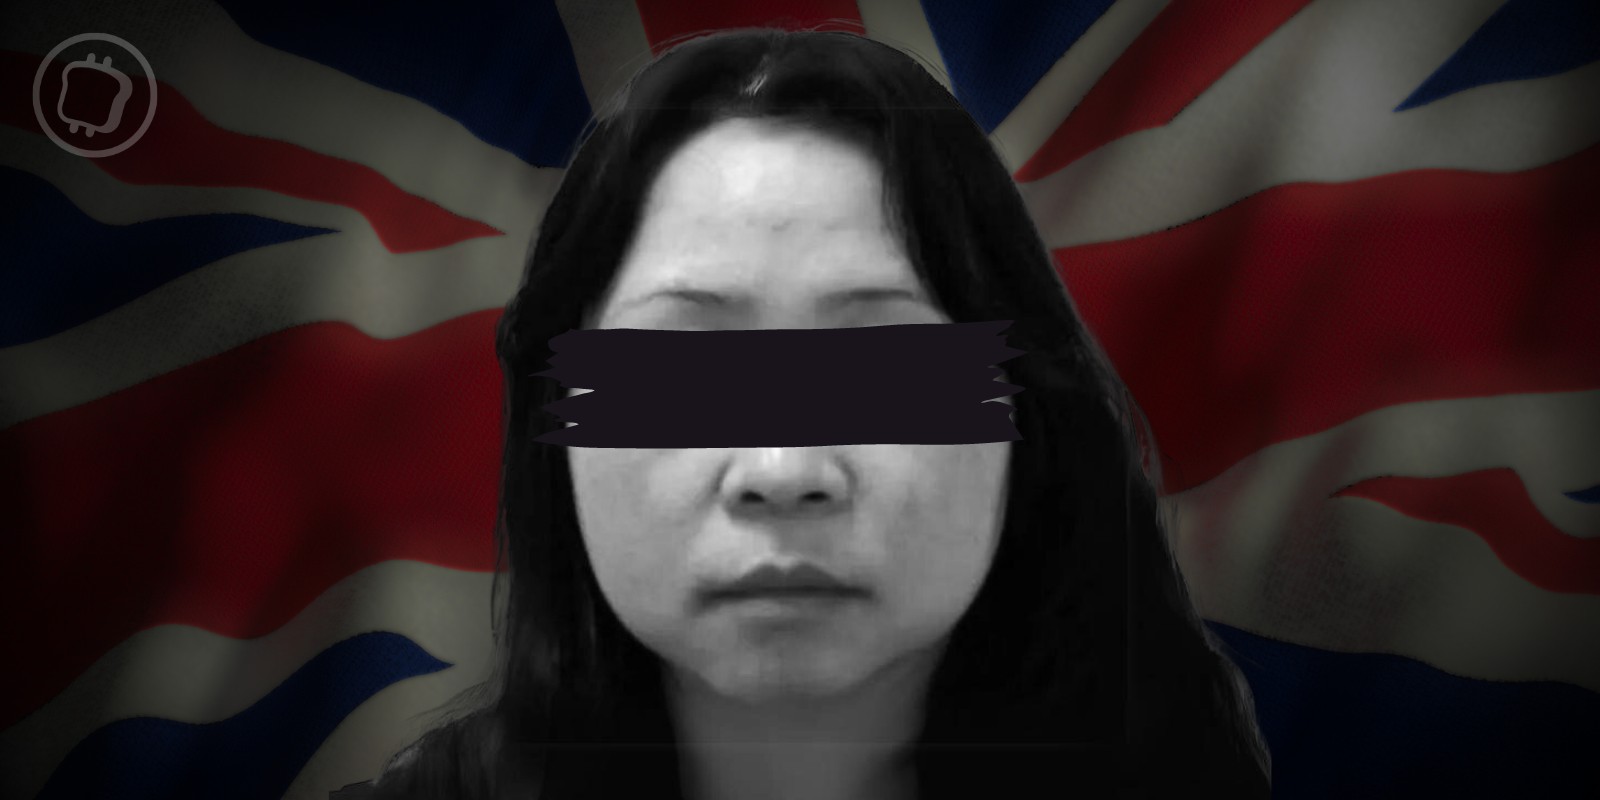 Londres : une femme arrêtée en possession de 2 milliards de livres (GBP) de cryptomonnaies